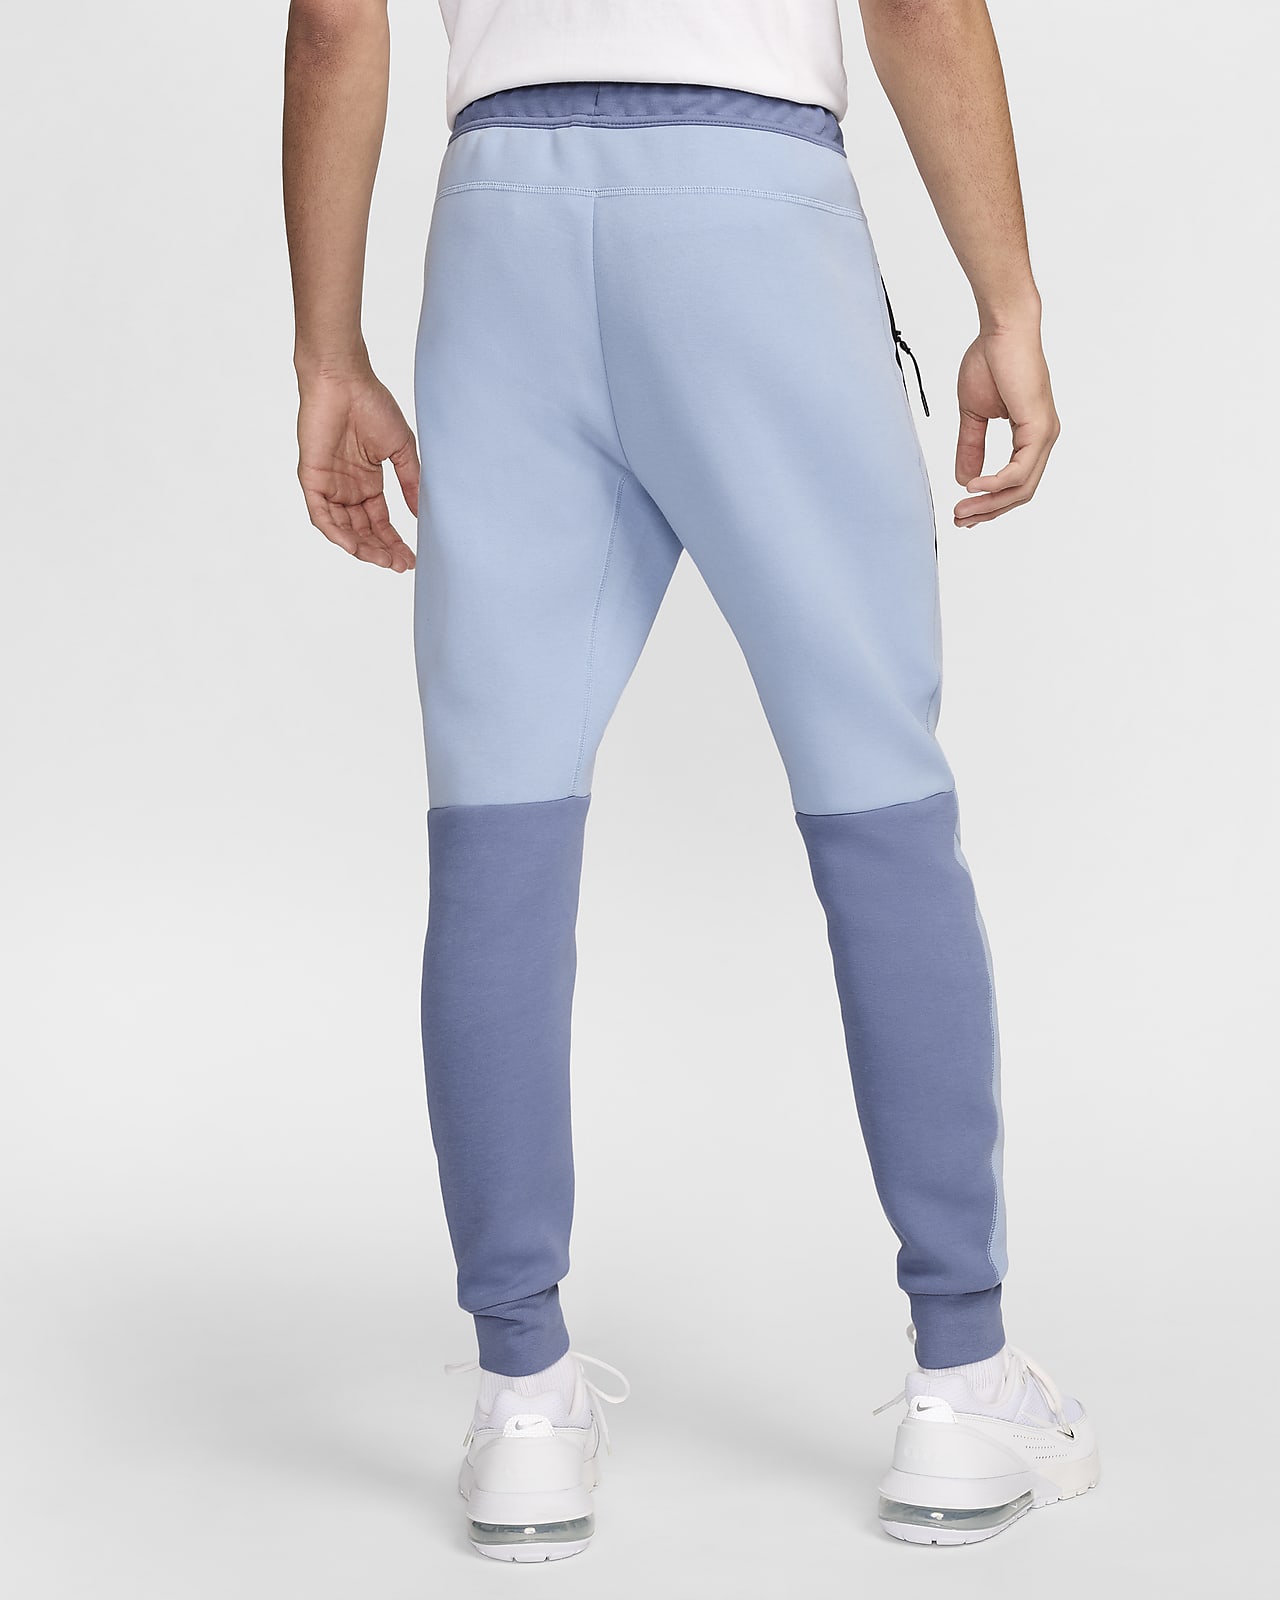 Nike sportswear sweatpants mens - Gem